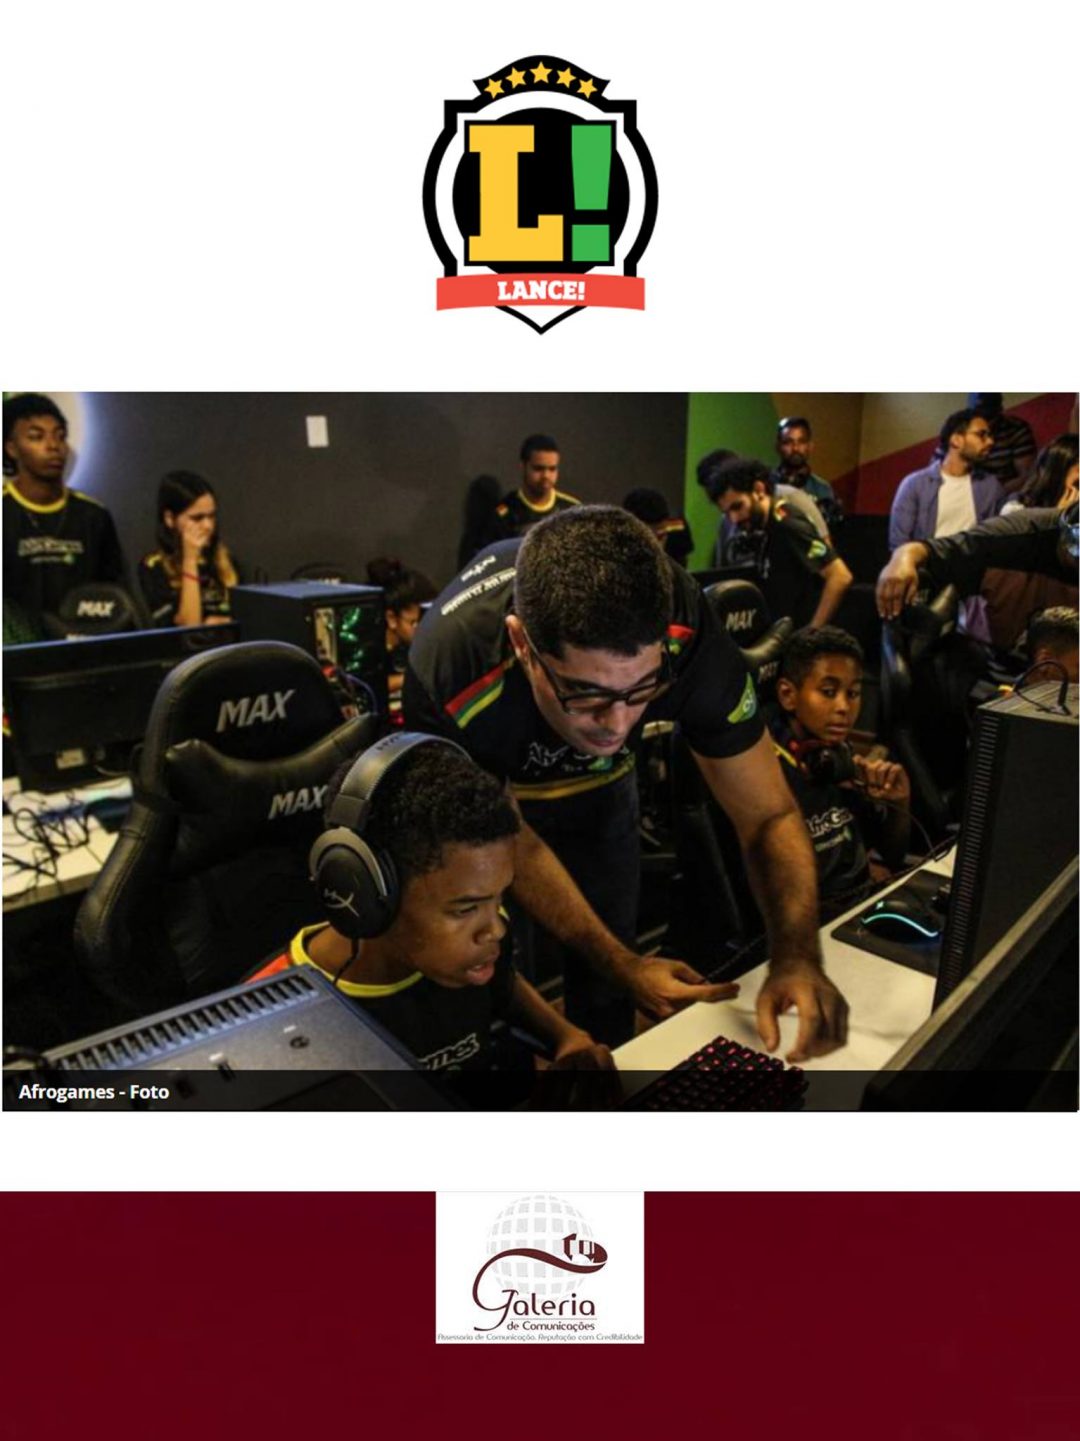 LANCE! – CSMV Advogados apoia o projeto de eSports do AfroGames e amplia abrangência de atuação de seu Comitê de Responsabilidade Social